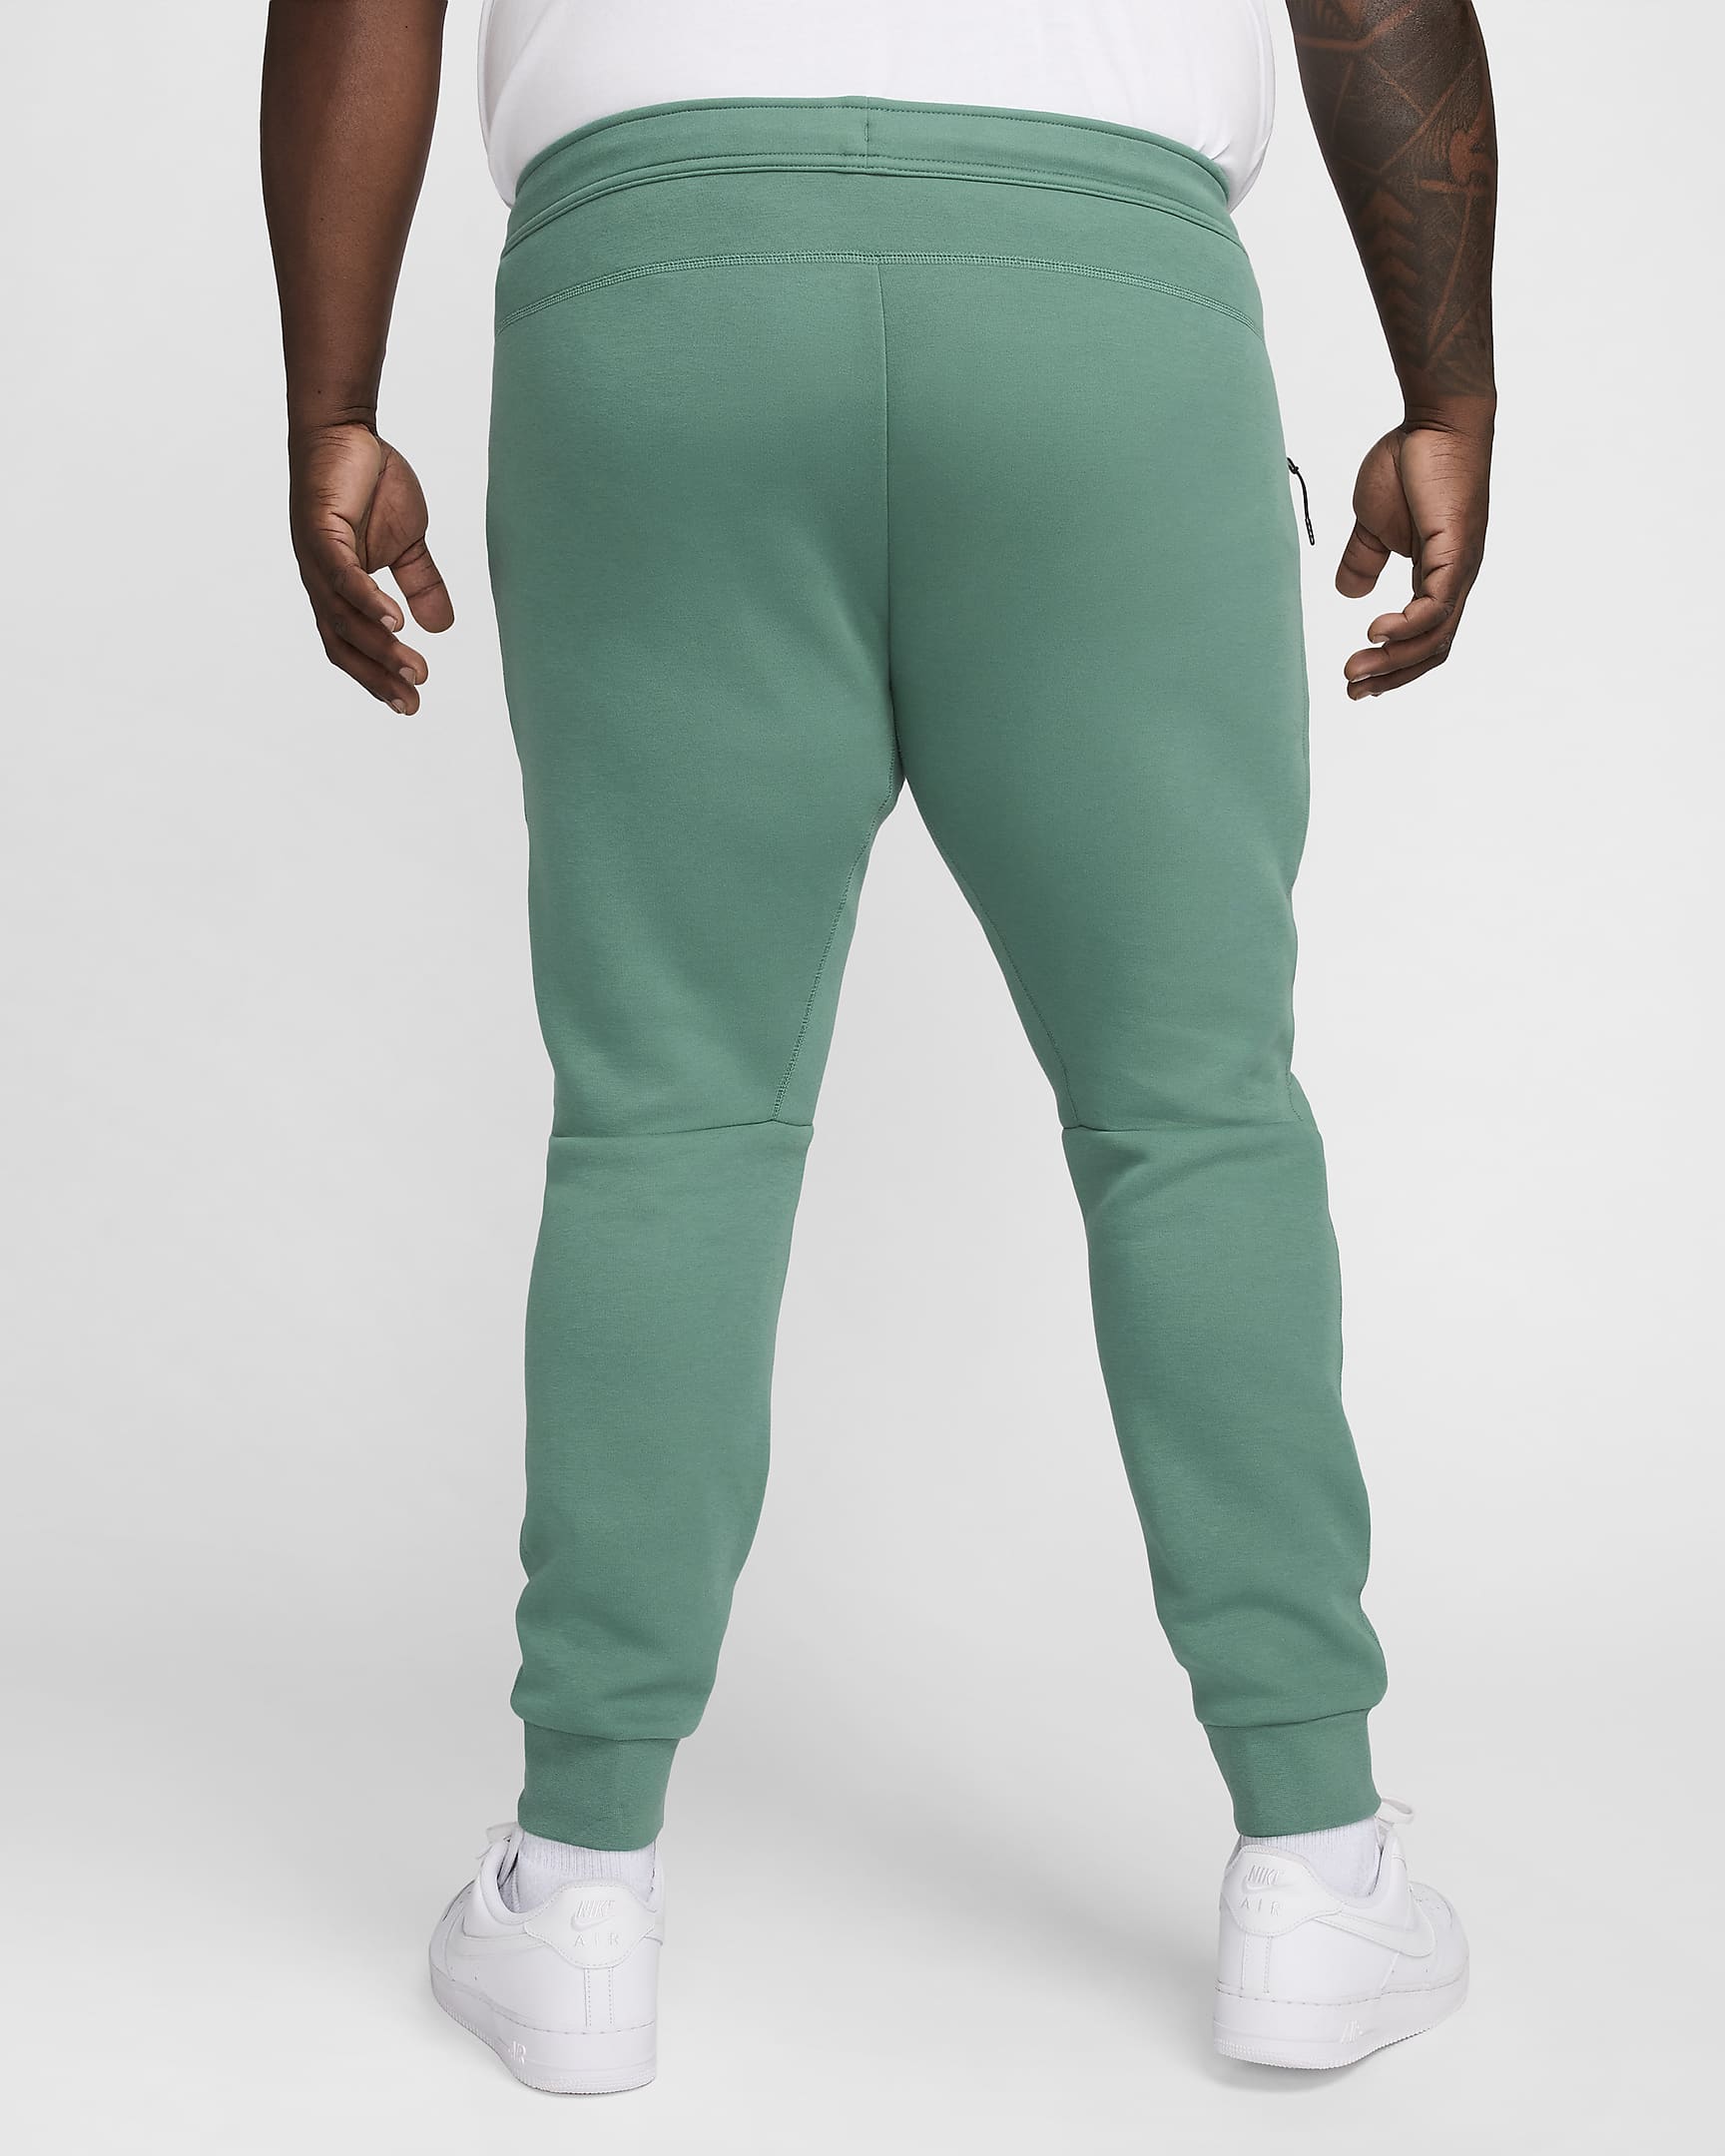 Nike Sportswear Tech Fleece Men's Joggers - Bicoastal/Black